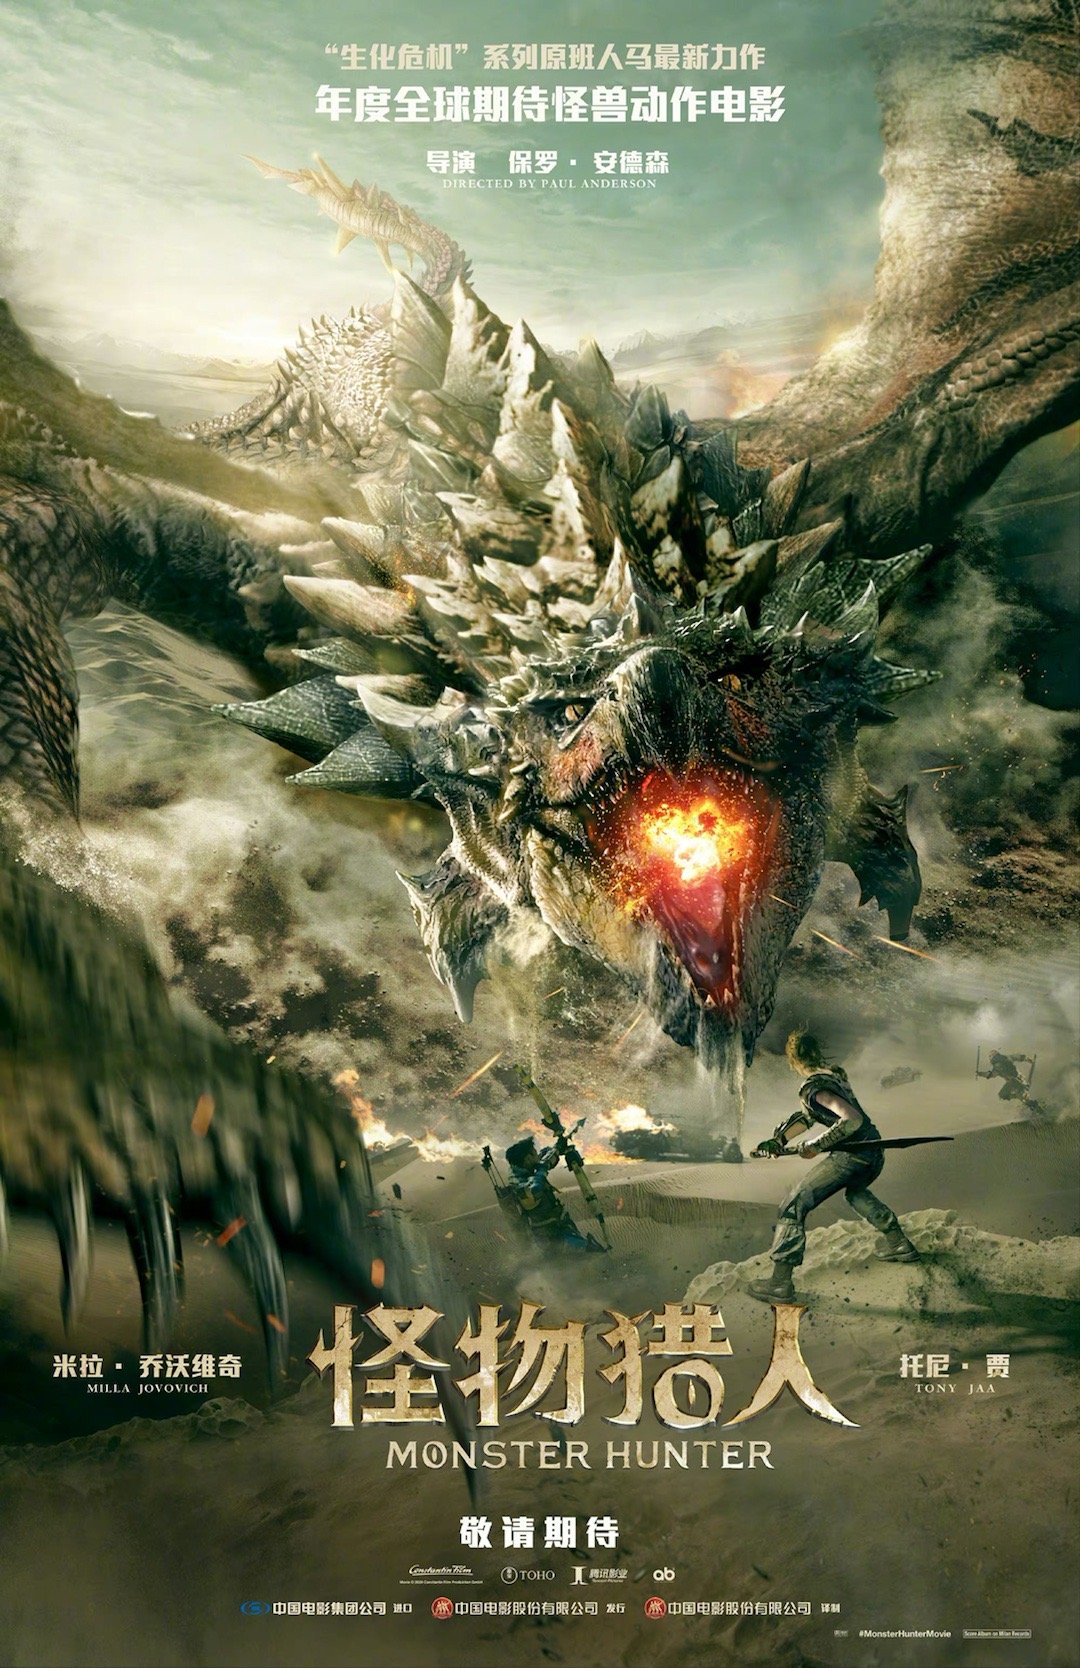 游戏改编影戏《怪物猎人》中文预告 确认引进中国本天